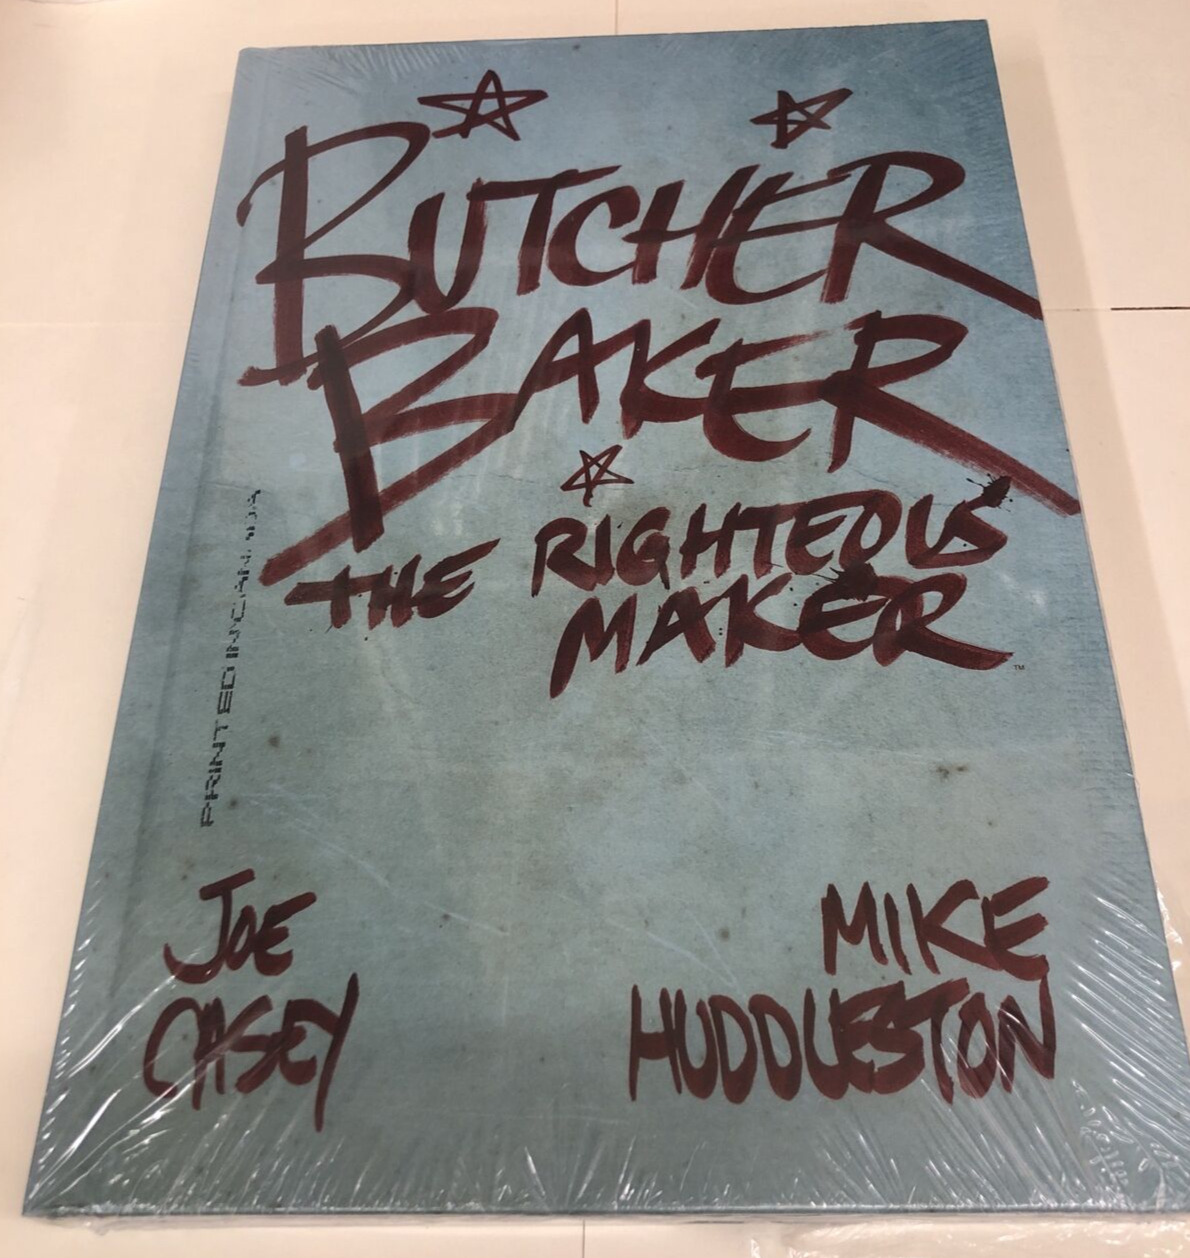 Butcher Baker, the Righteous Maker Hardcover (Joe Casey, TPB  2012) New Sealed